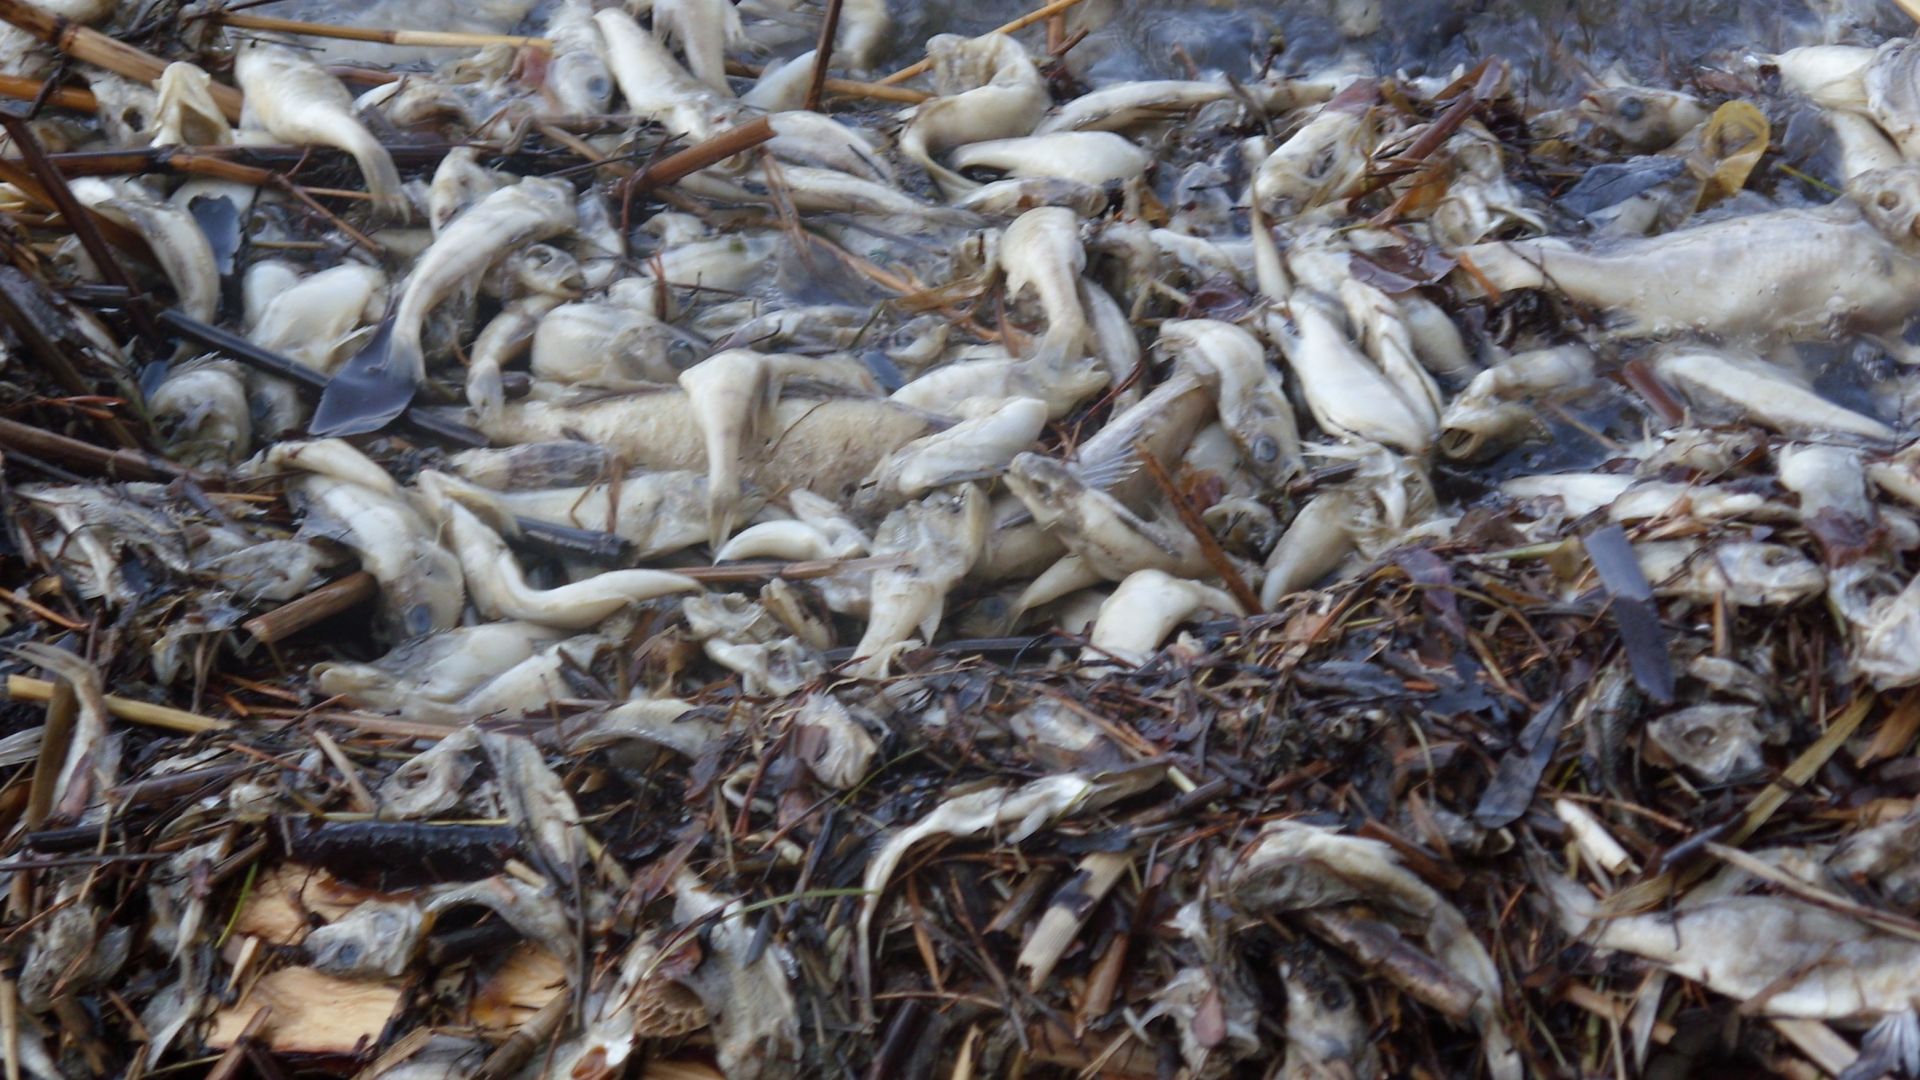 Над 15 тона умряла риба са били събрани и загробени